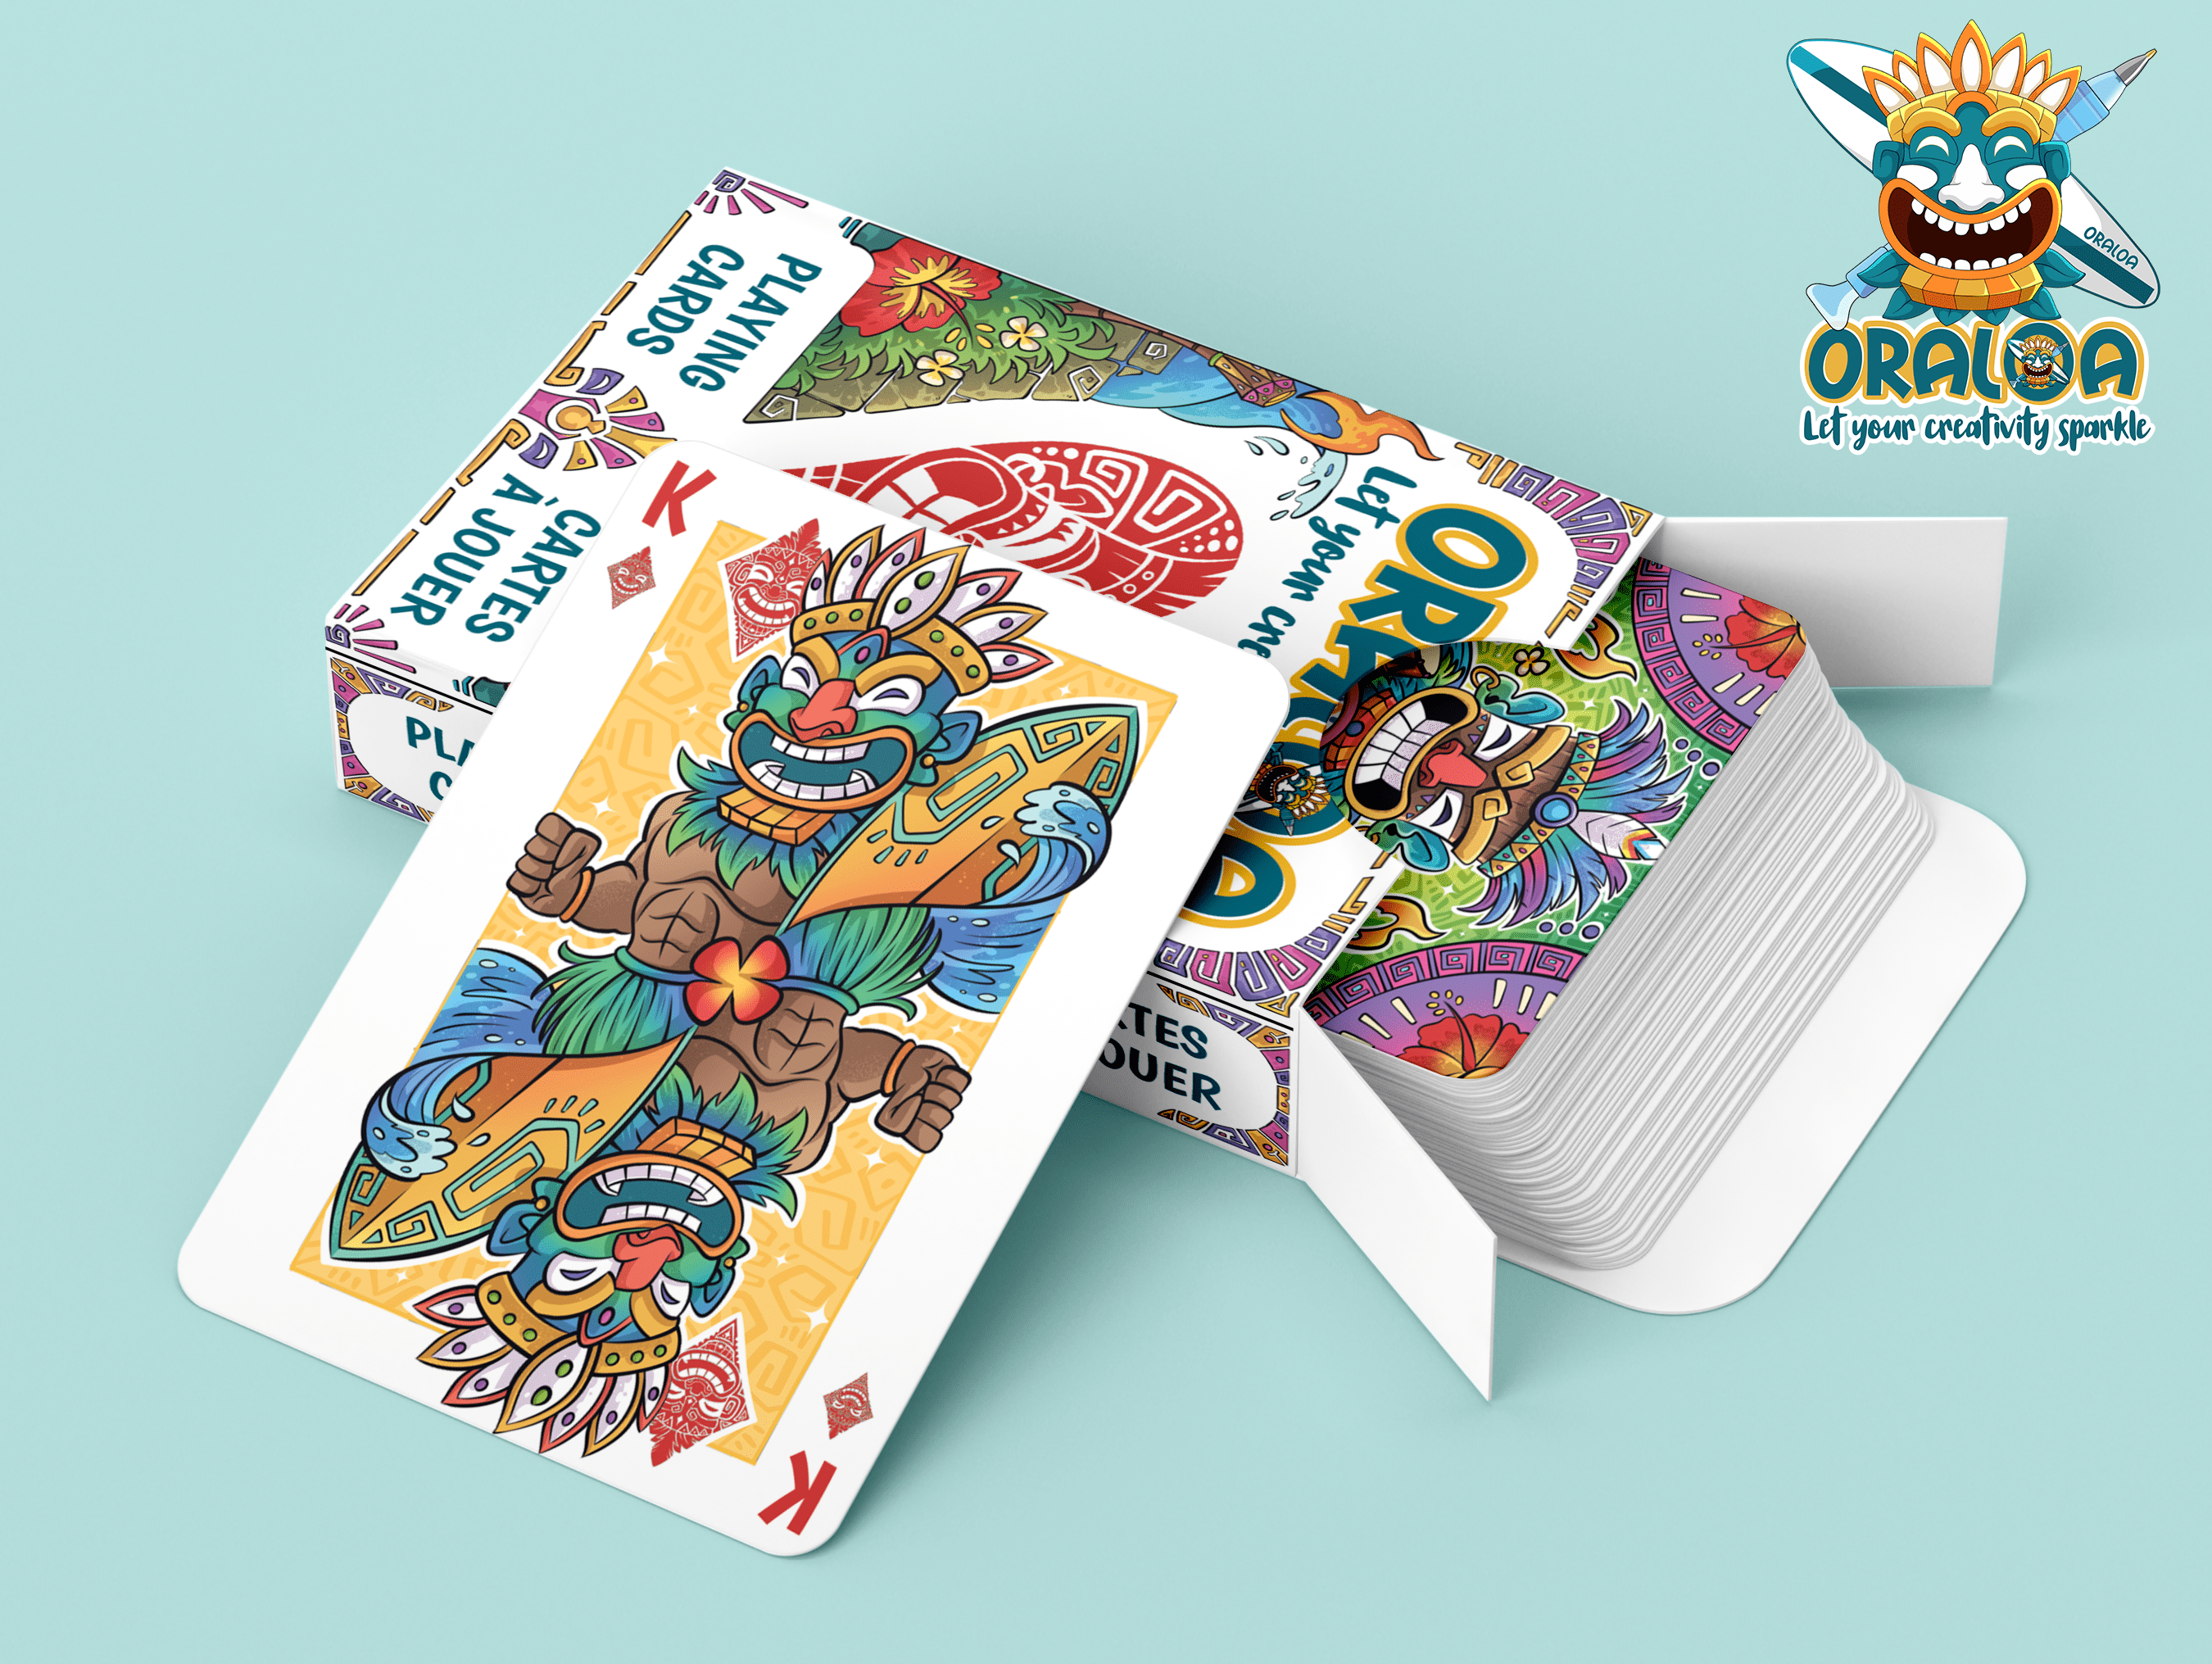 Oraloa Game cards Oraloa.